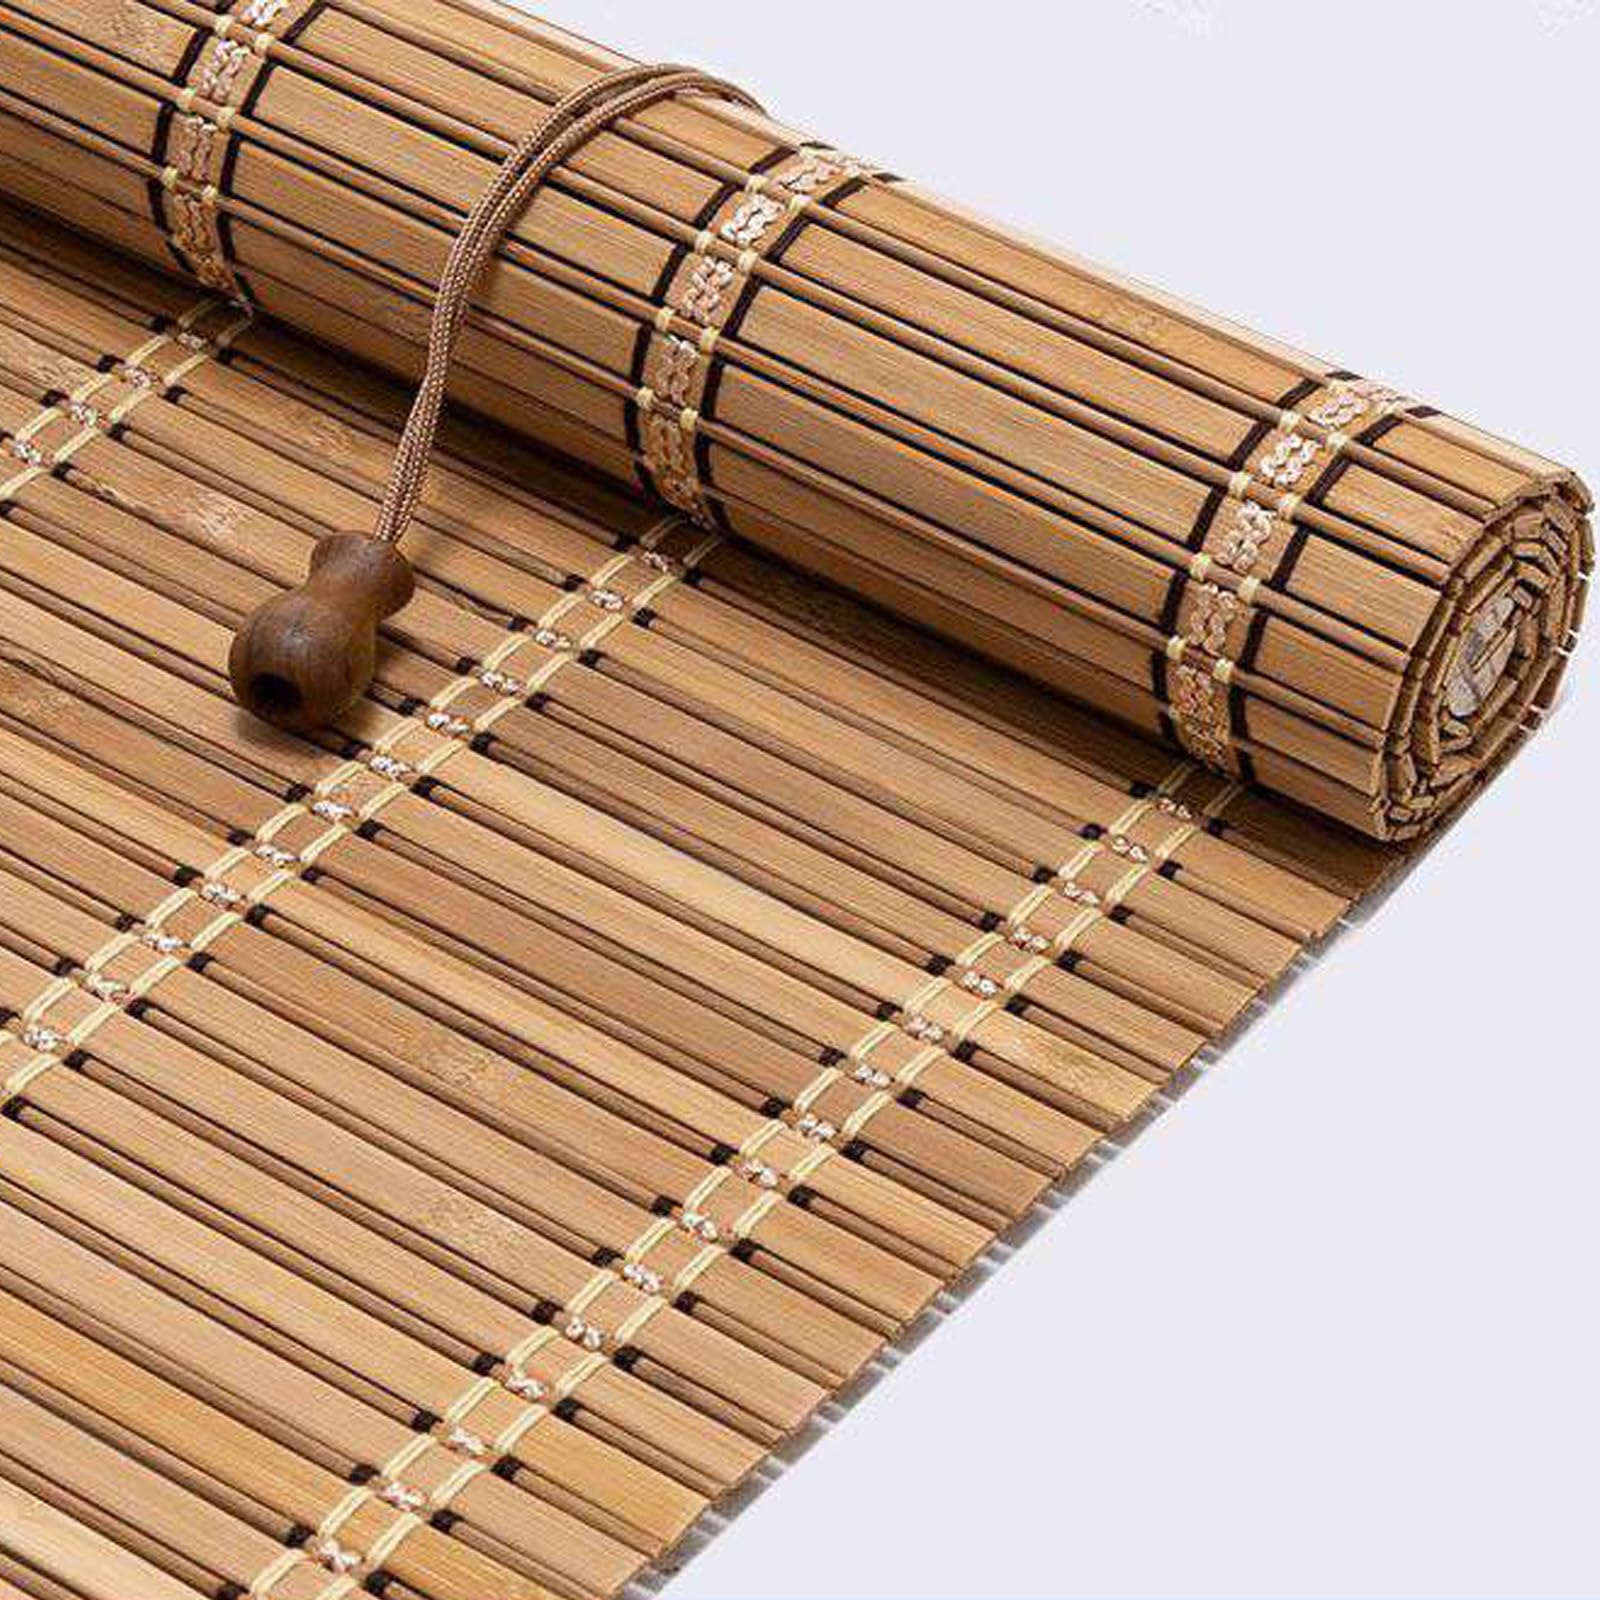 YUJIANHUAA Bambusrollo Retro Bambus Rollo,60% Blickdicht Raffrollo aus Bambus,Sonnenschutz Atmungsaktiv Sichtschutz,für Korridor Gazebo Gärten Terrassen,Anpassbar,Breite×Höhe (60cm x 140cm)